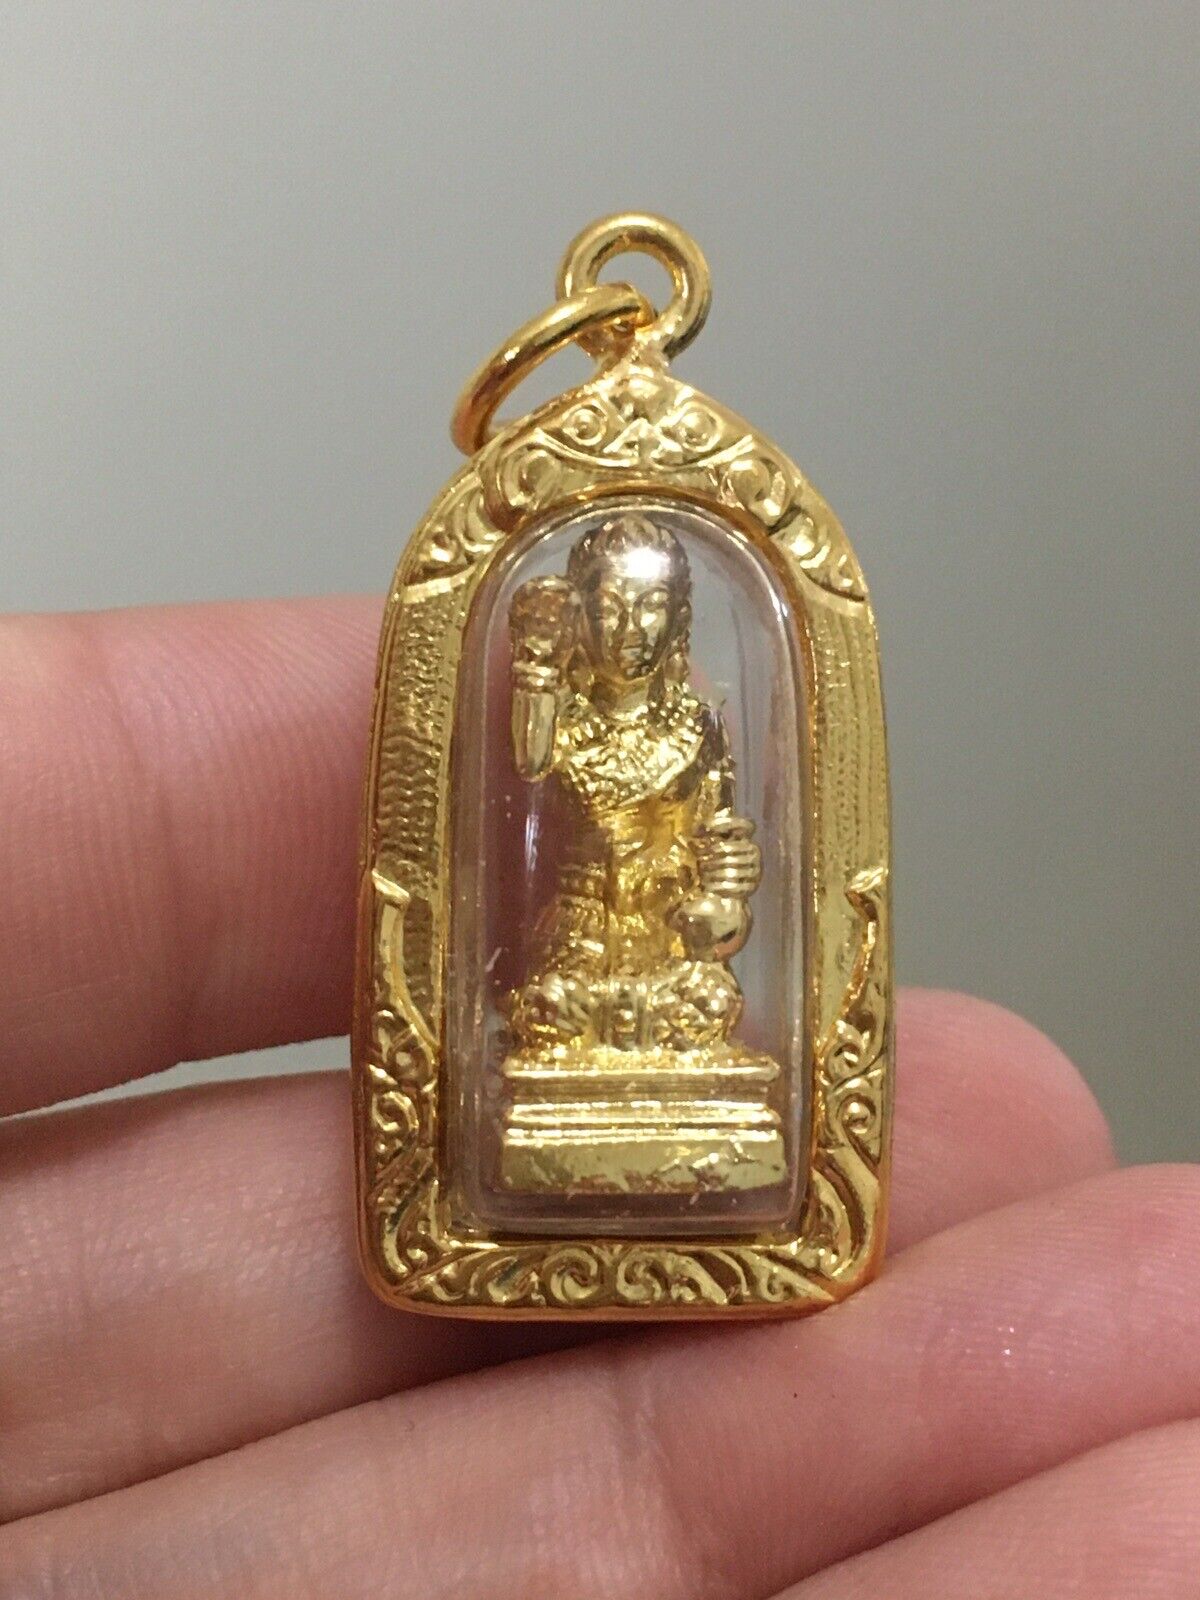 Gorgeous Mini Nang Kwak Lady Thai Amulet Talisman Charm Luck Protection Vol. 2